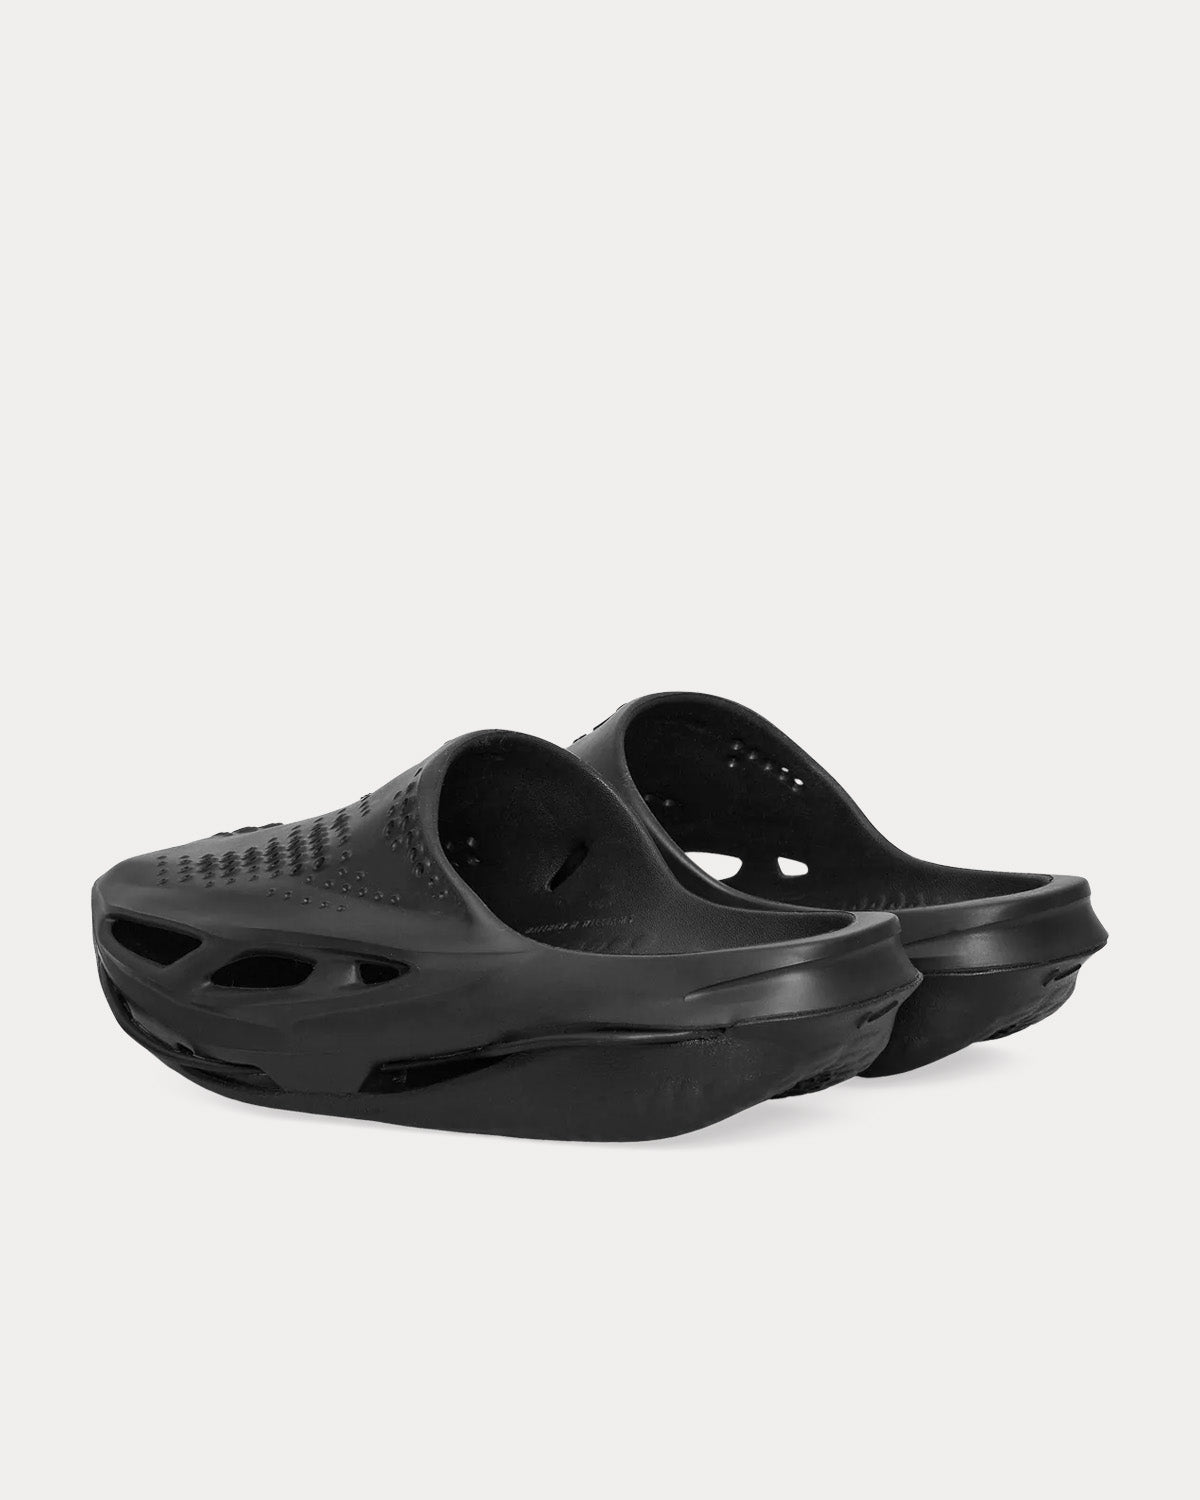 1017 ALYX 9SM - MMW Nike 005 Black Slides